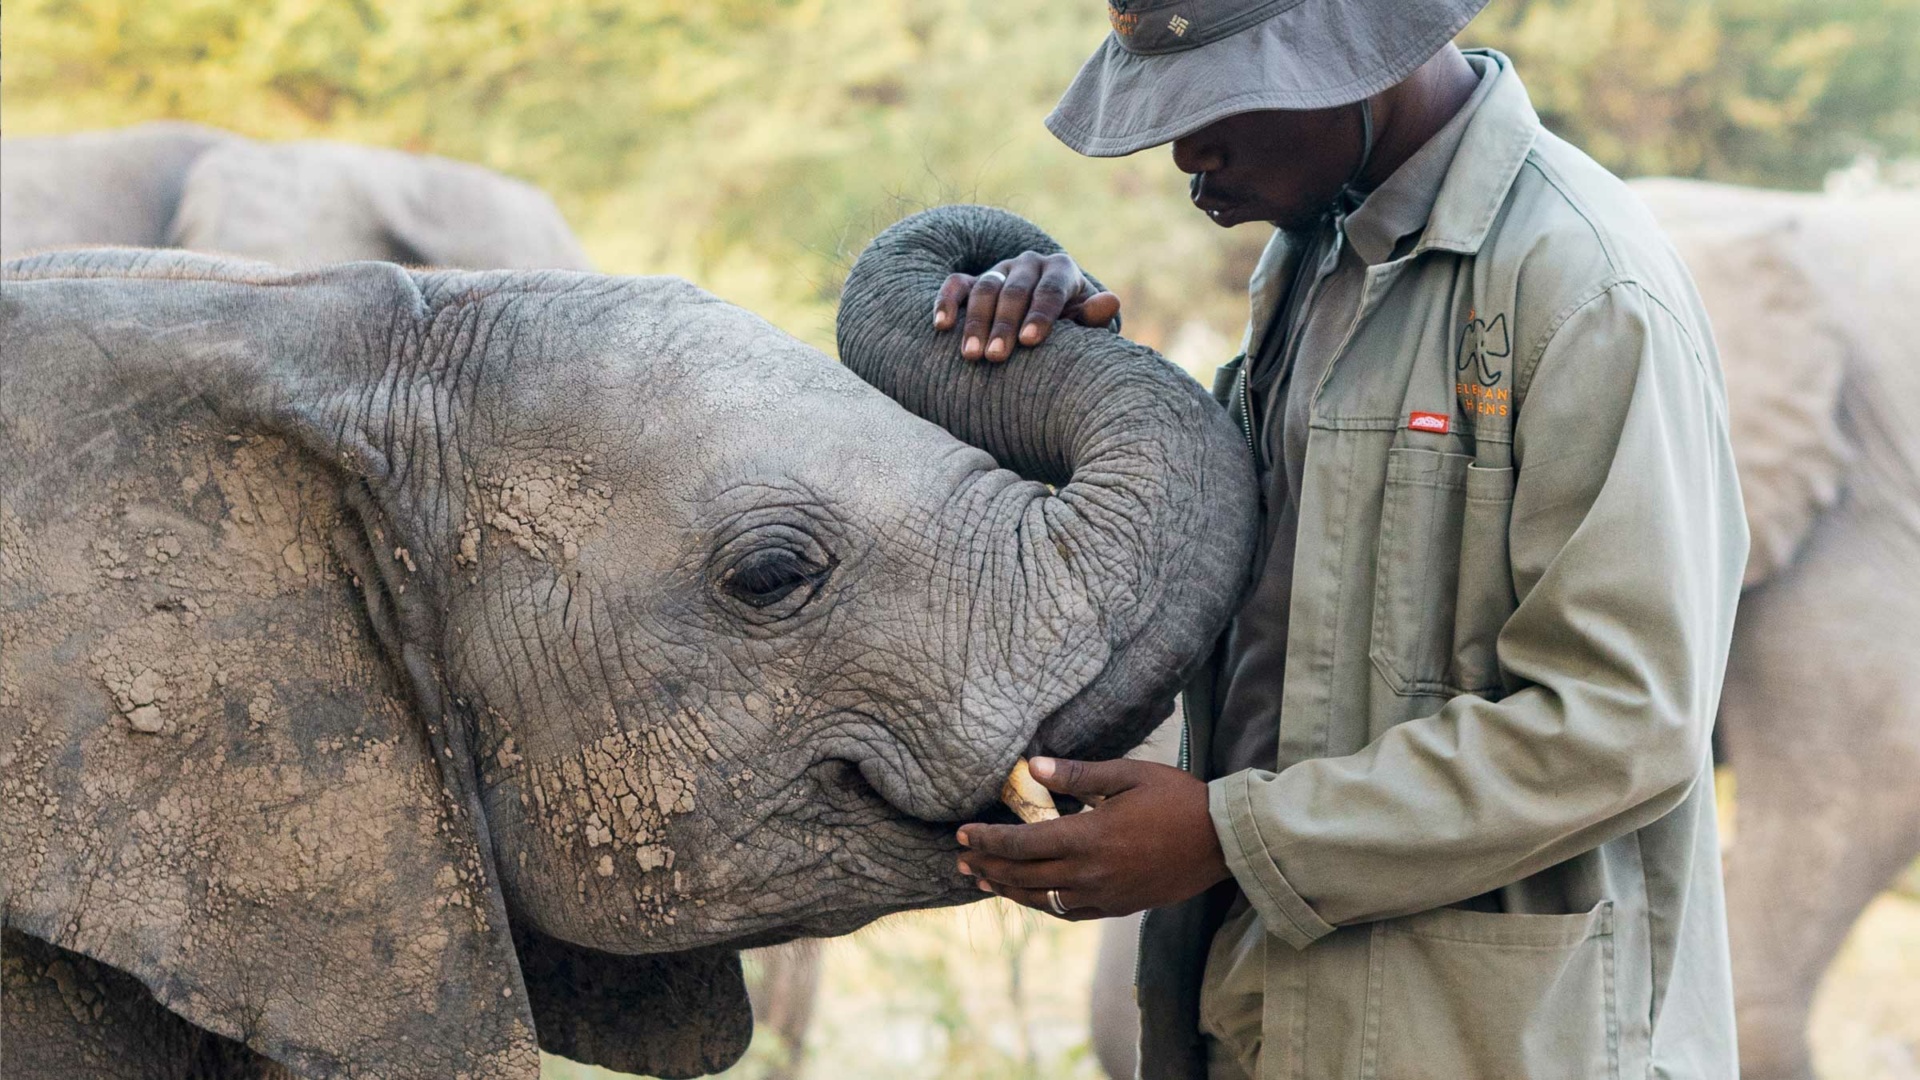 Elephant Havens handler blows elephant a kiss